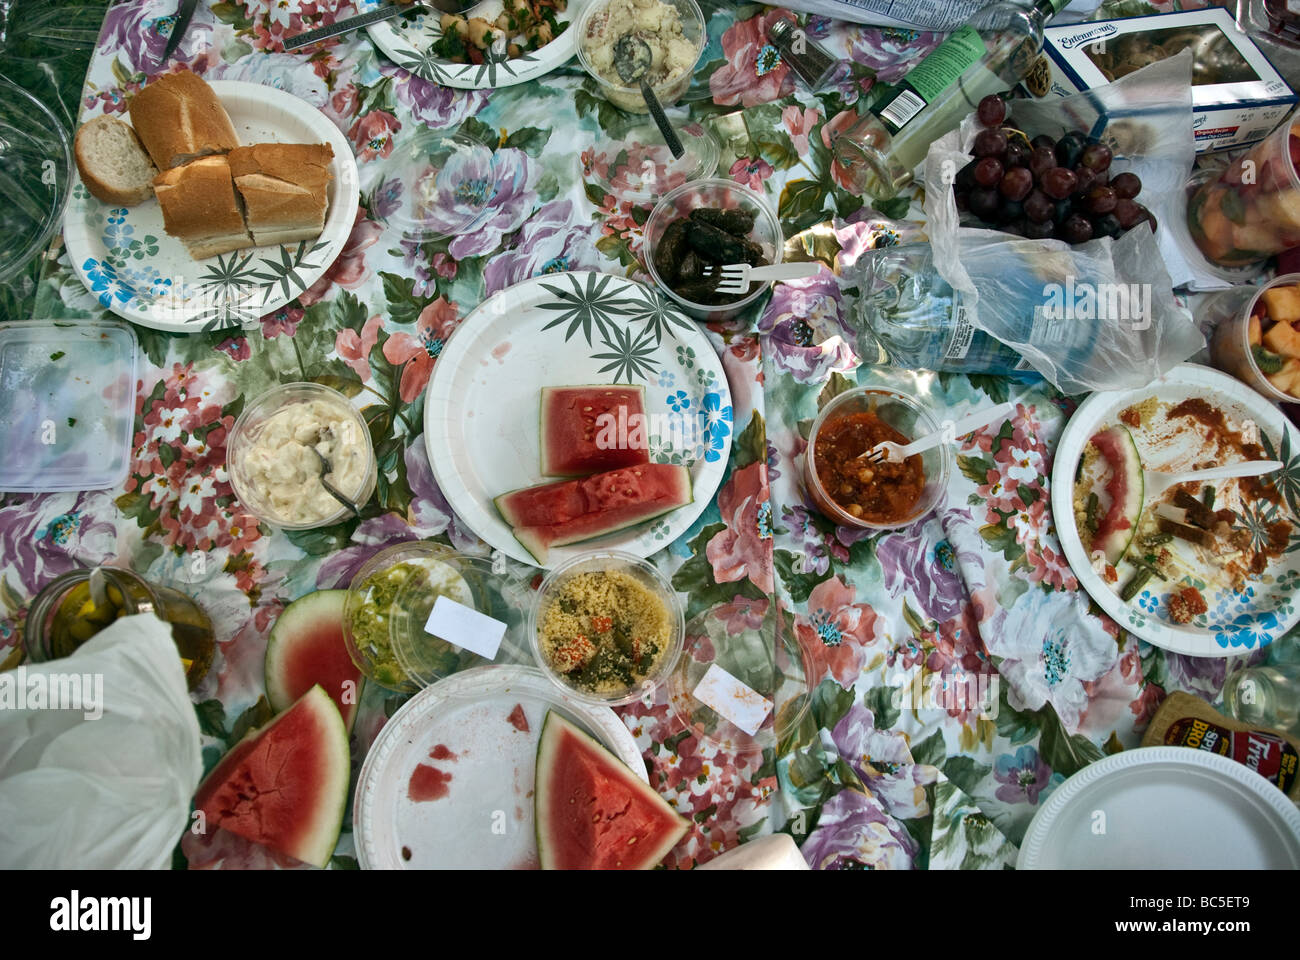 L'alimentation, y compris les tranches de melon de pique-nique, du pain croustillant, guacamole, olives, cornichons et salade de pomme de terre sur une toile d'impression rose Banque D'Images